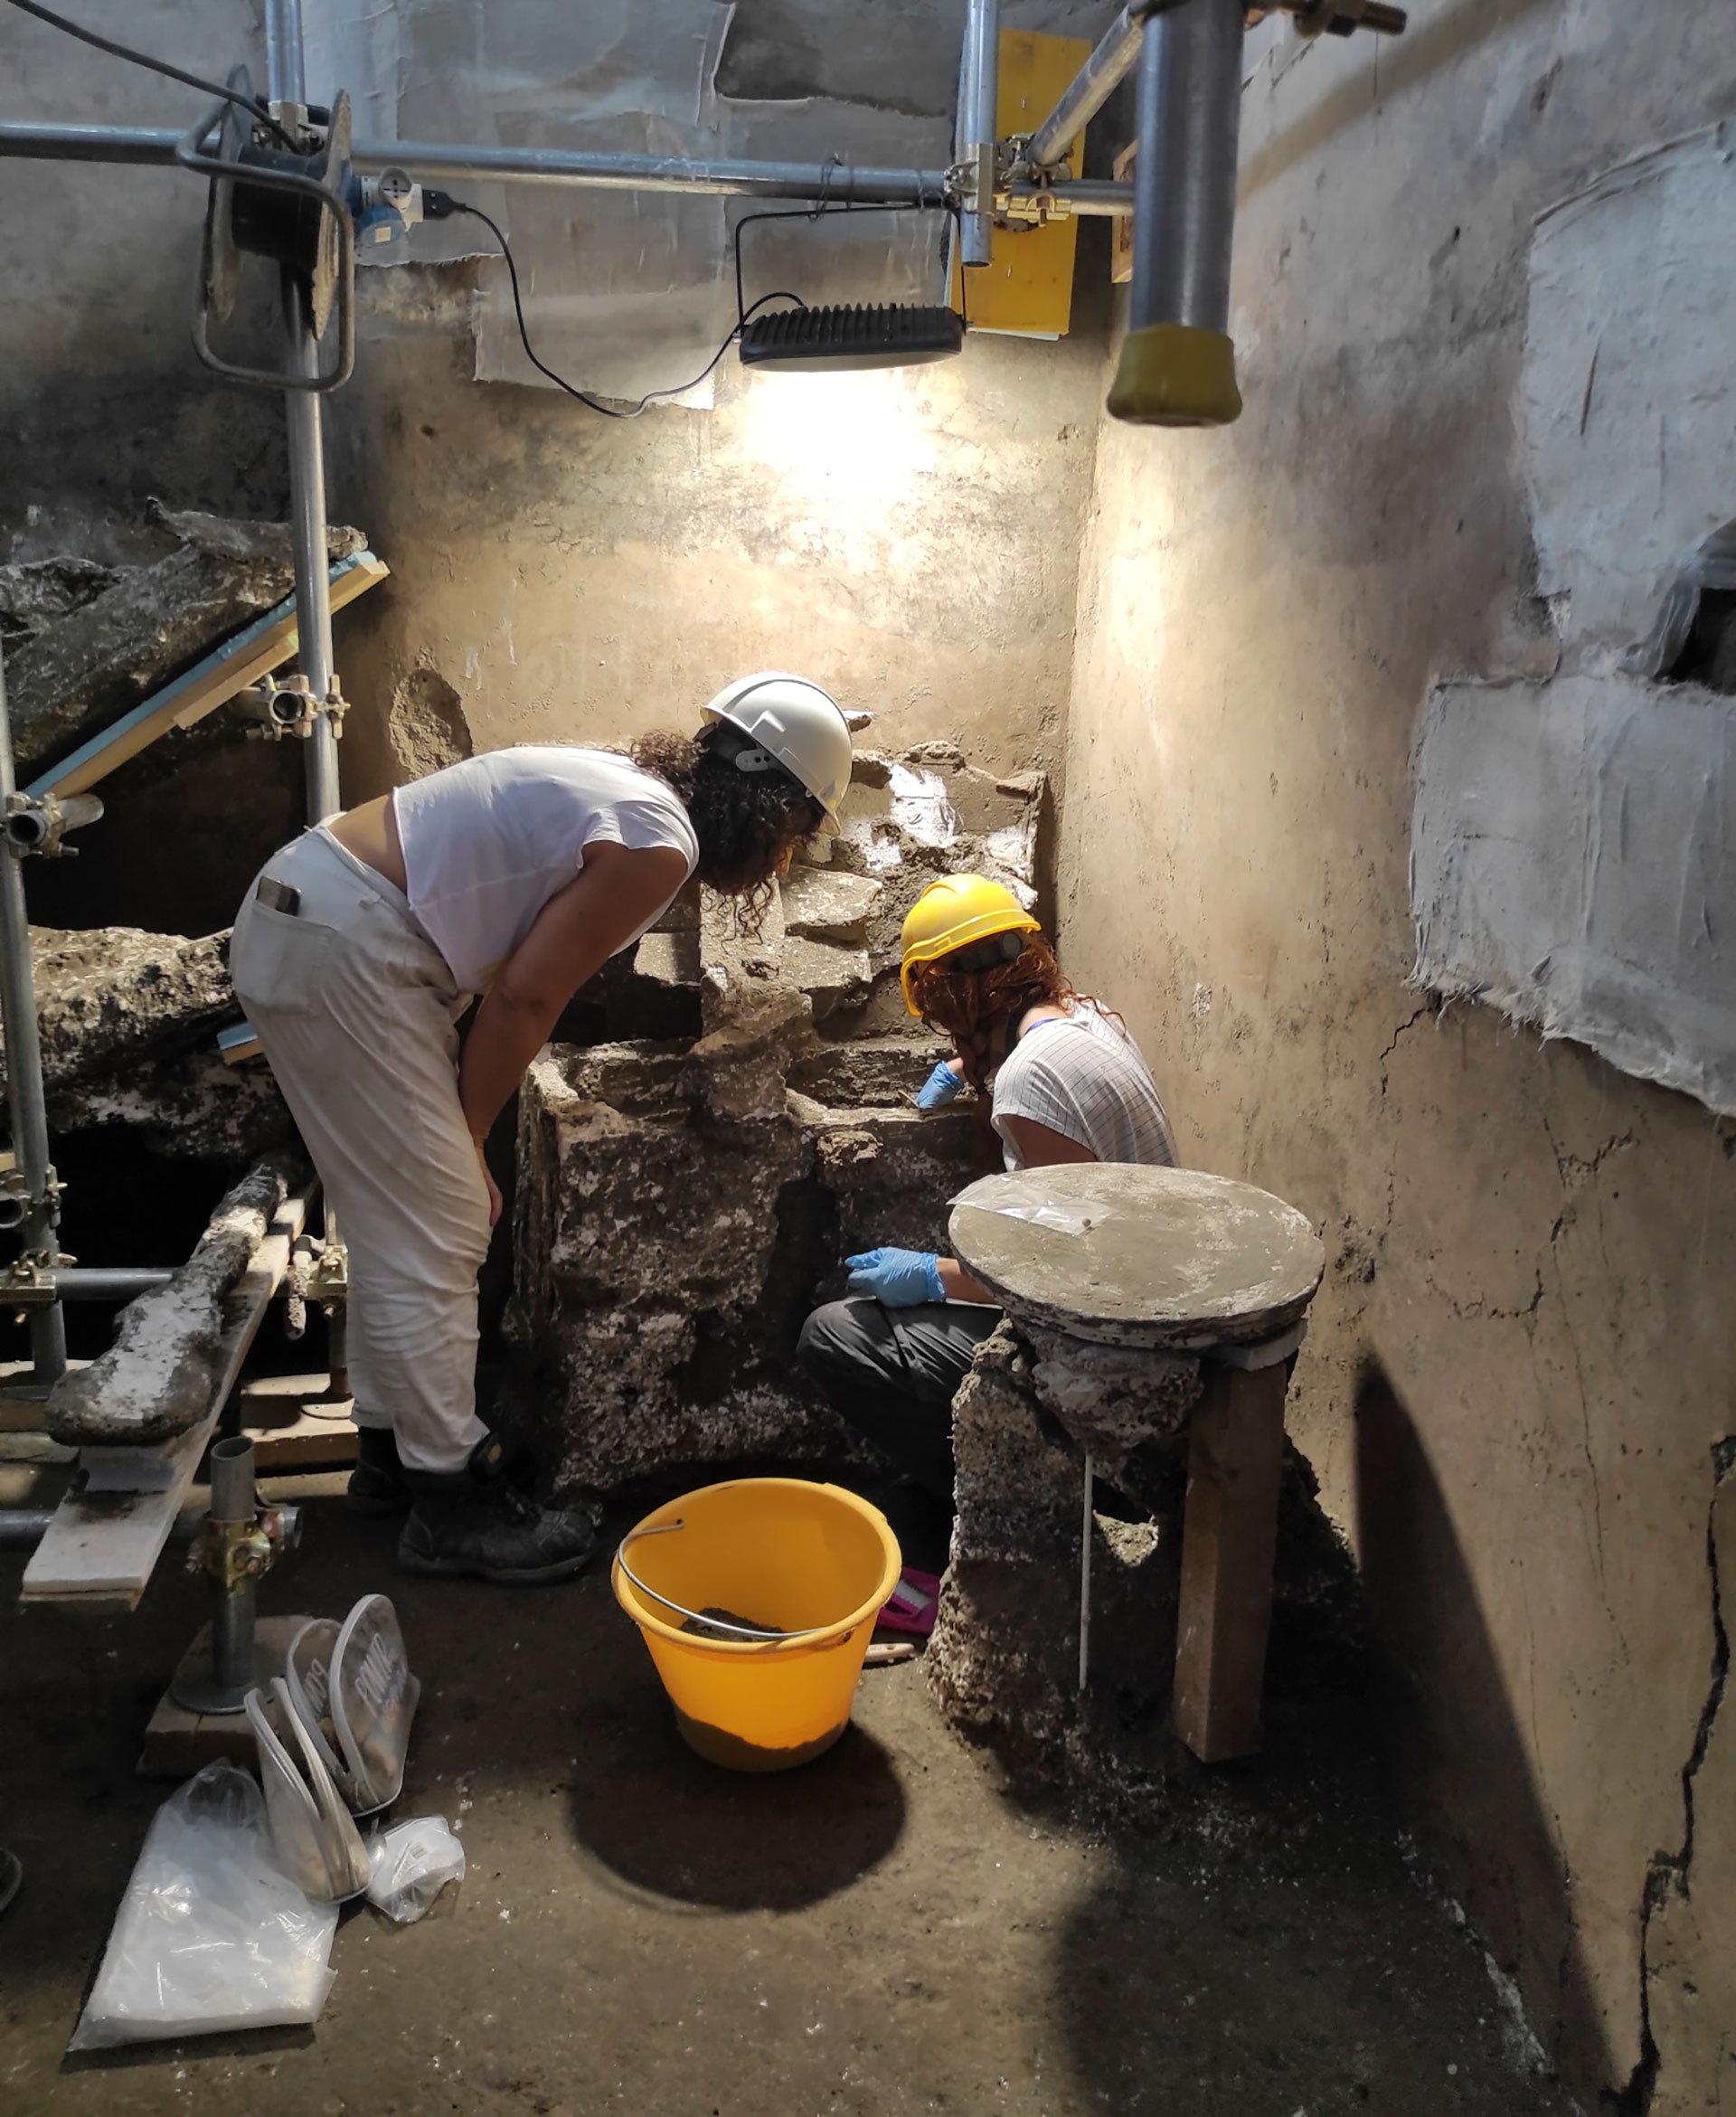 Arkeologer er engasjert i oppdagelsen av husholdningskar.  EFE/Pompei arkeologiske park  